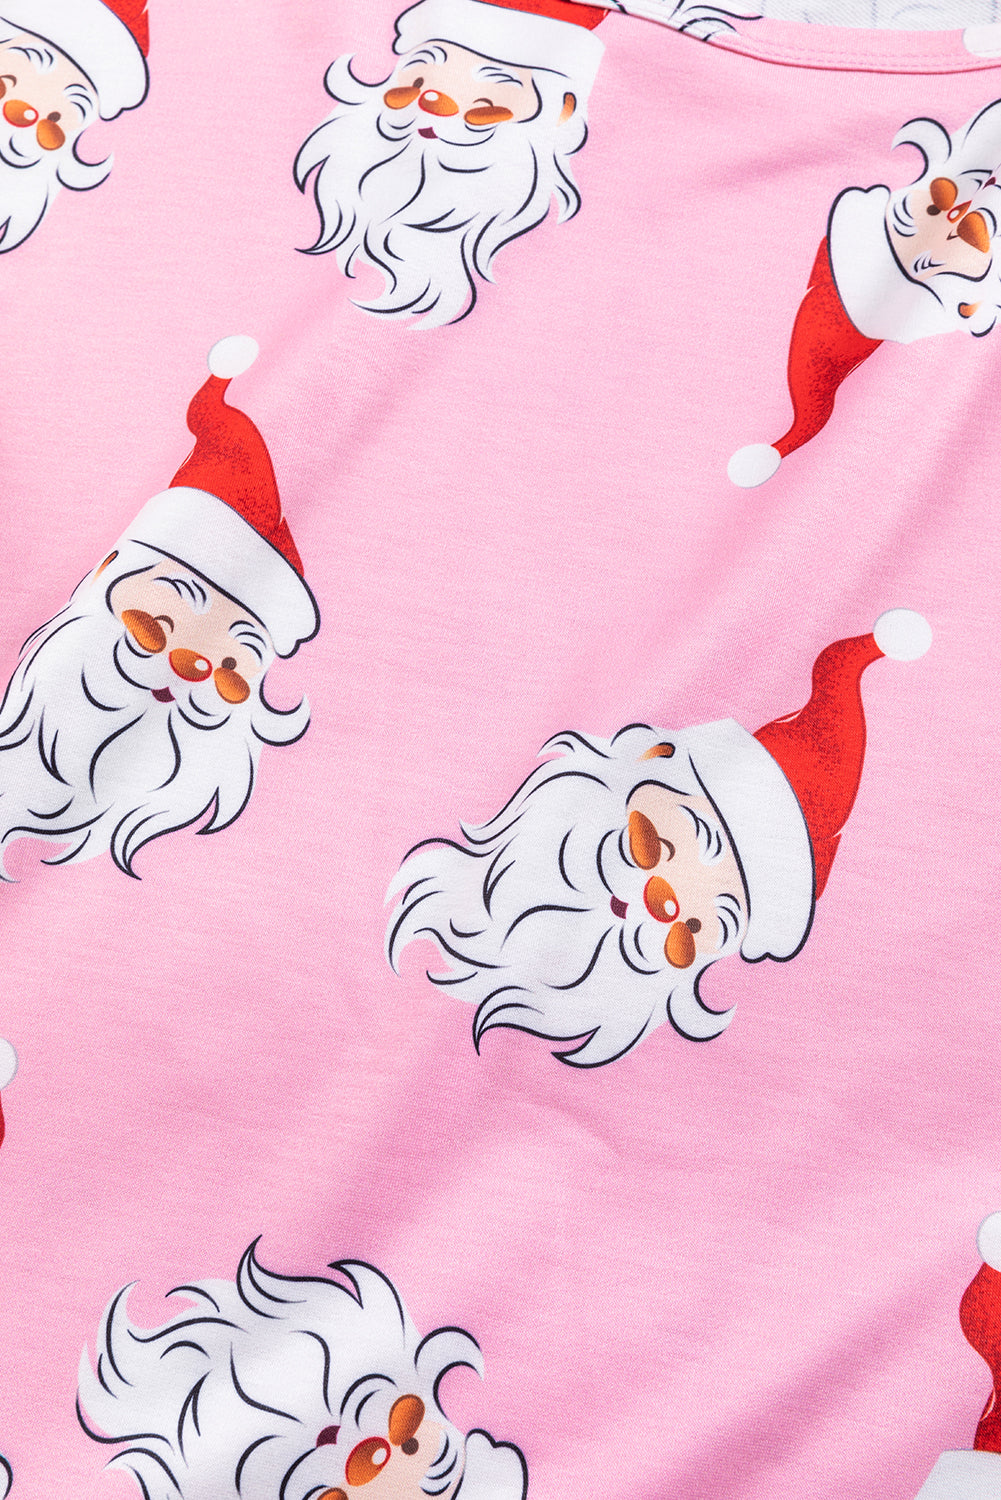 Ružičasta božićna bluza s lampionima s Djedom Božićnjakom